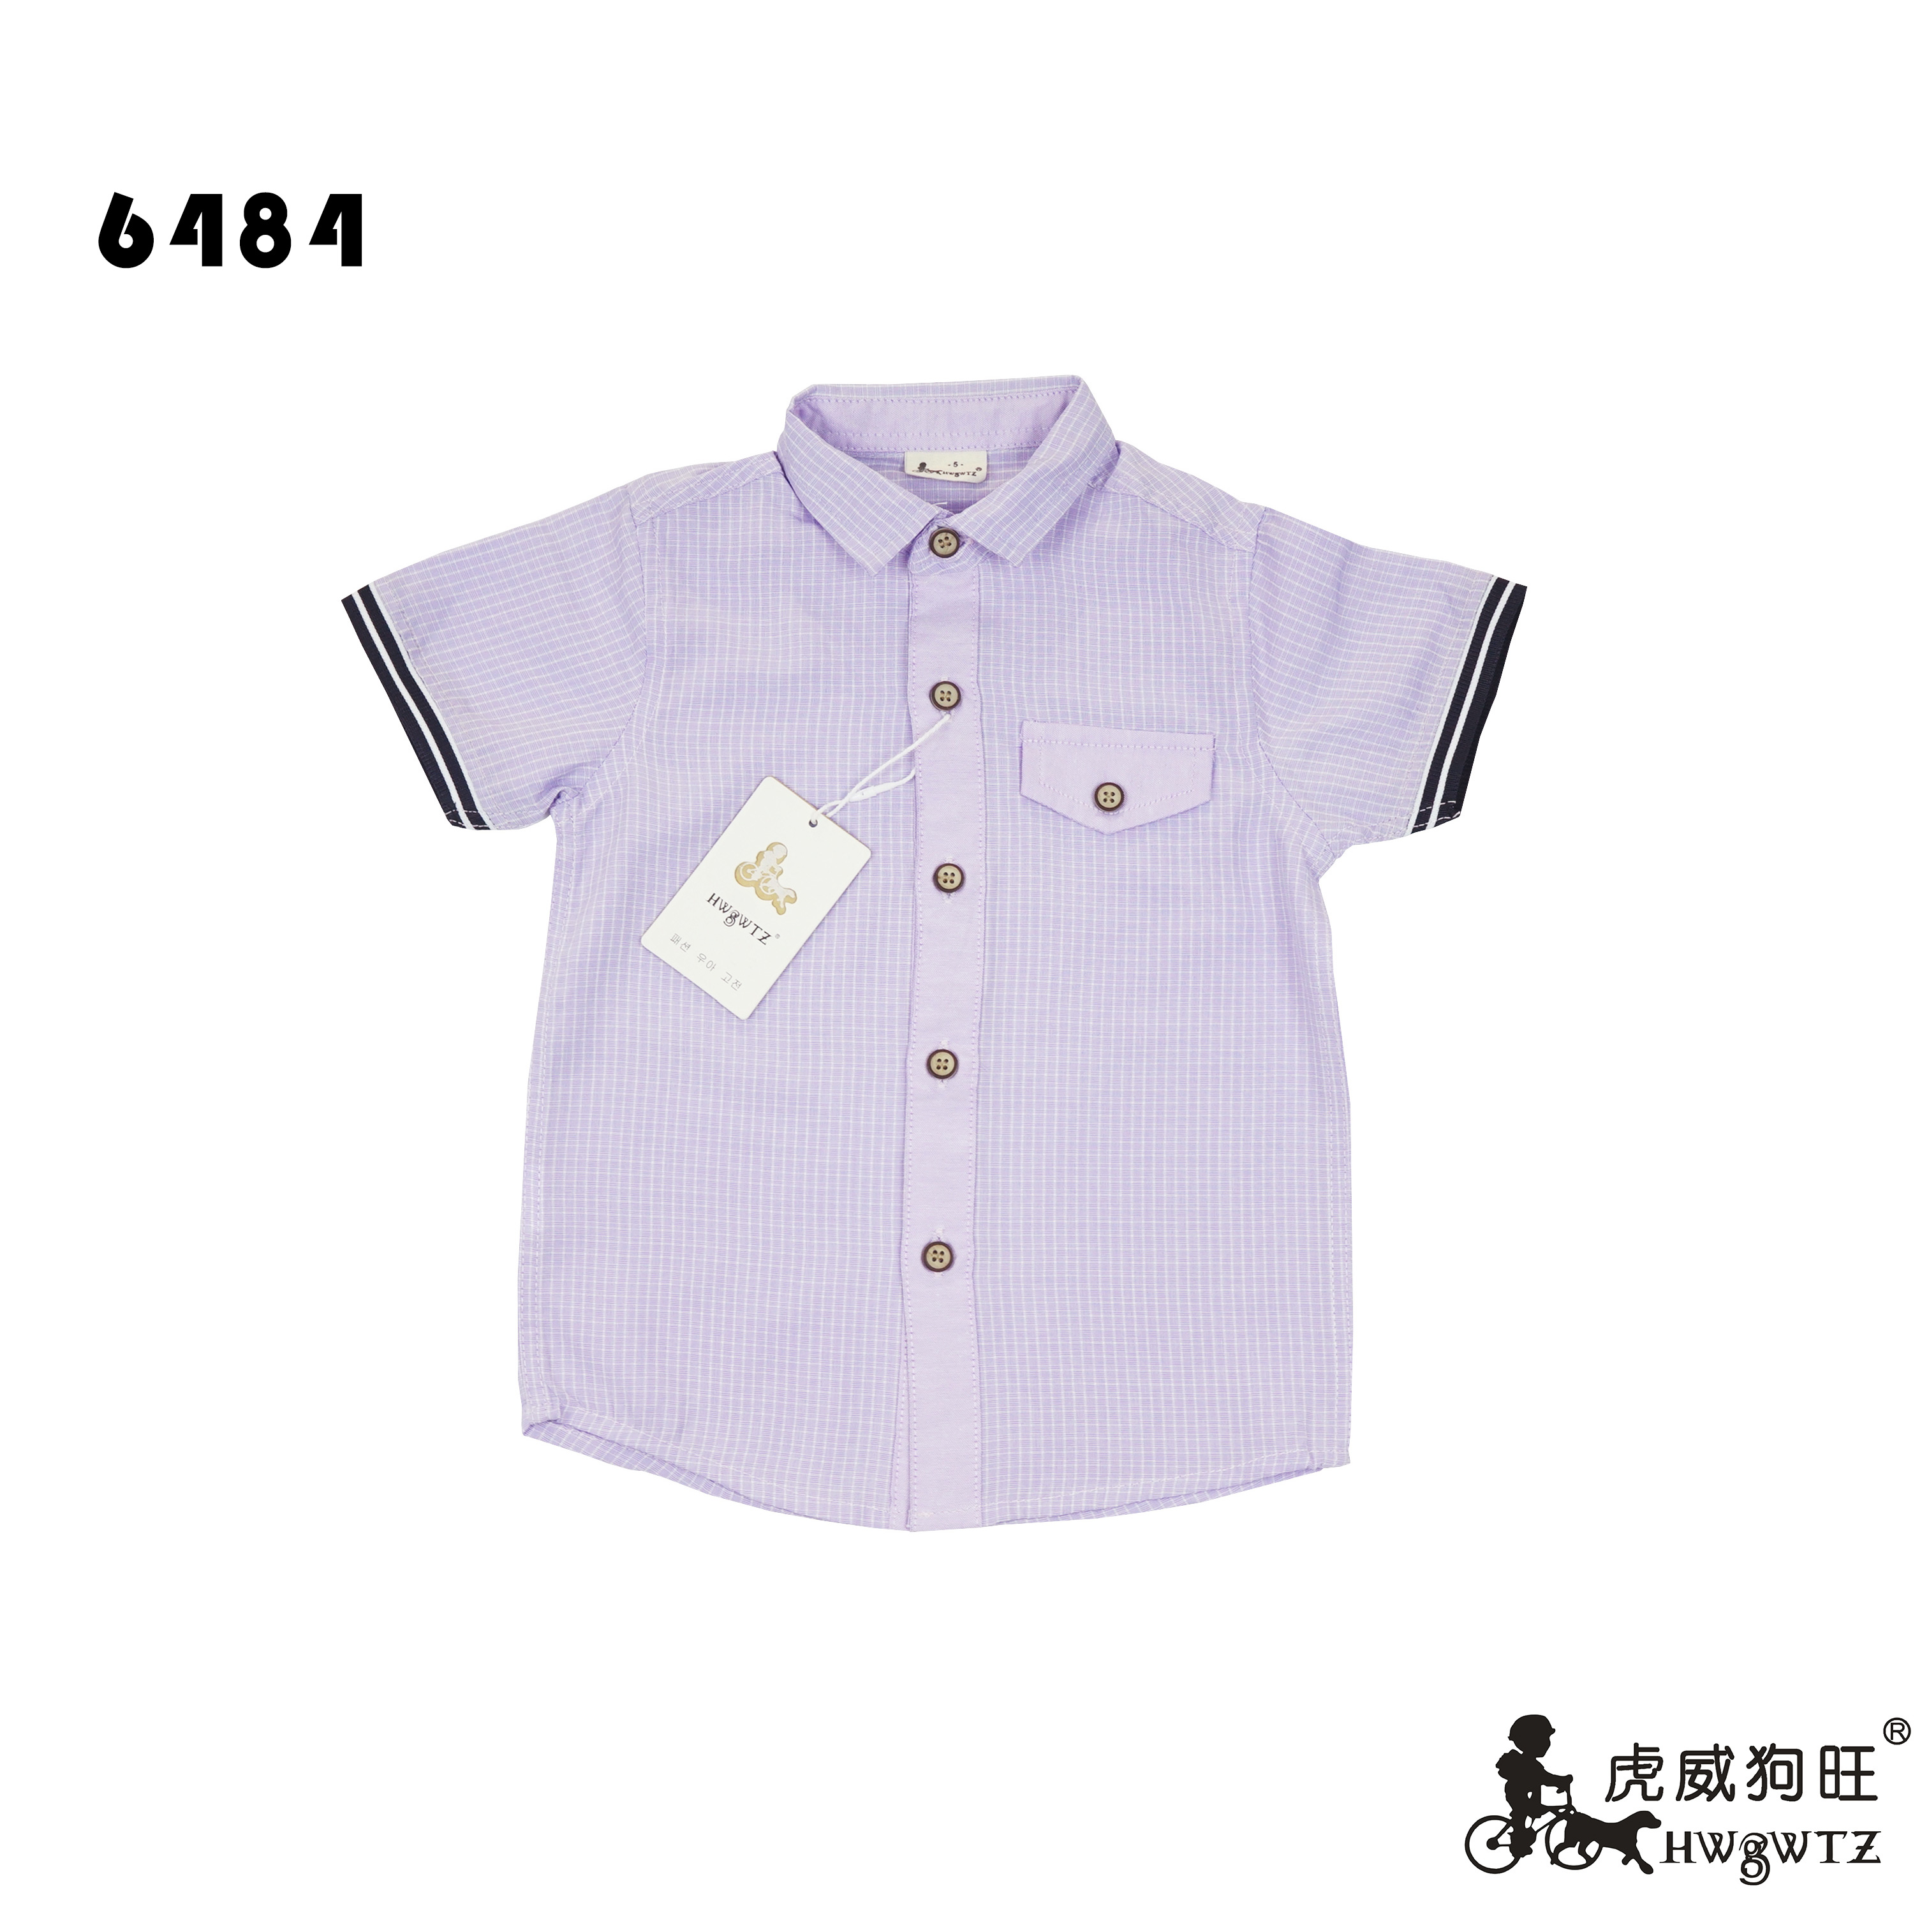 6484紫.jpg